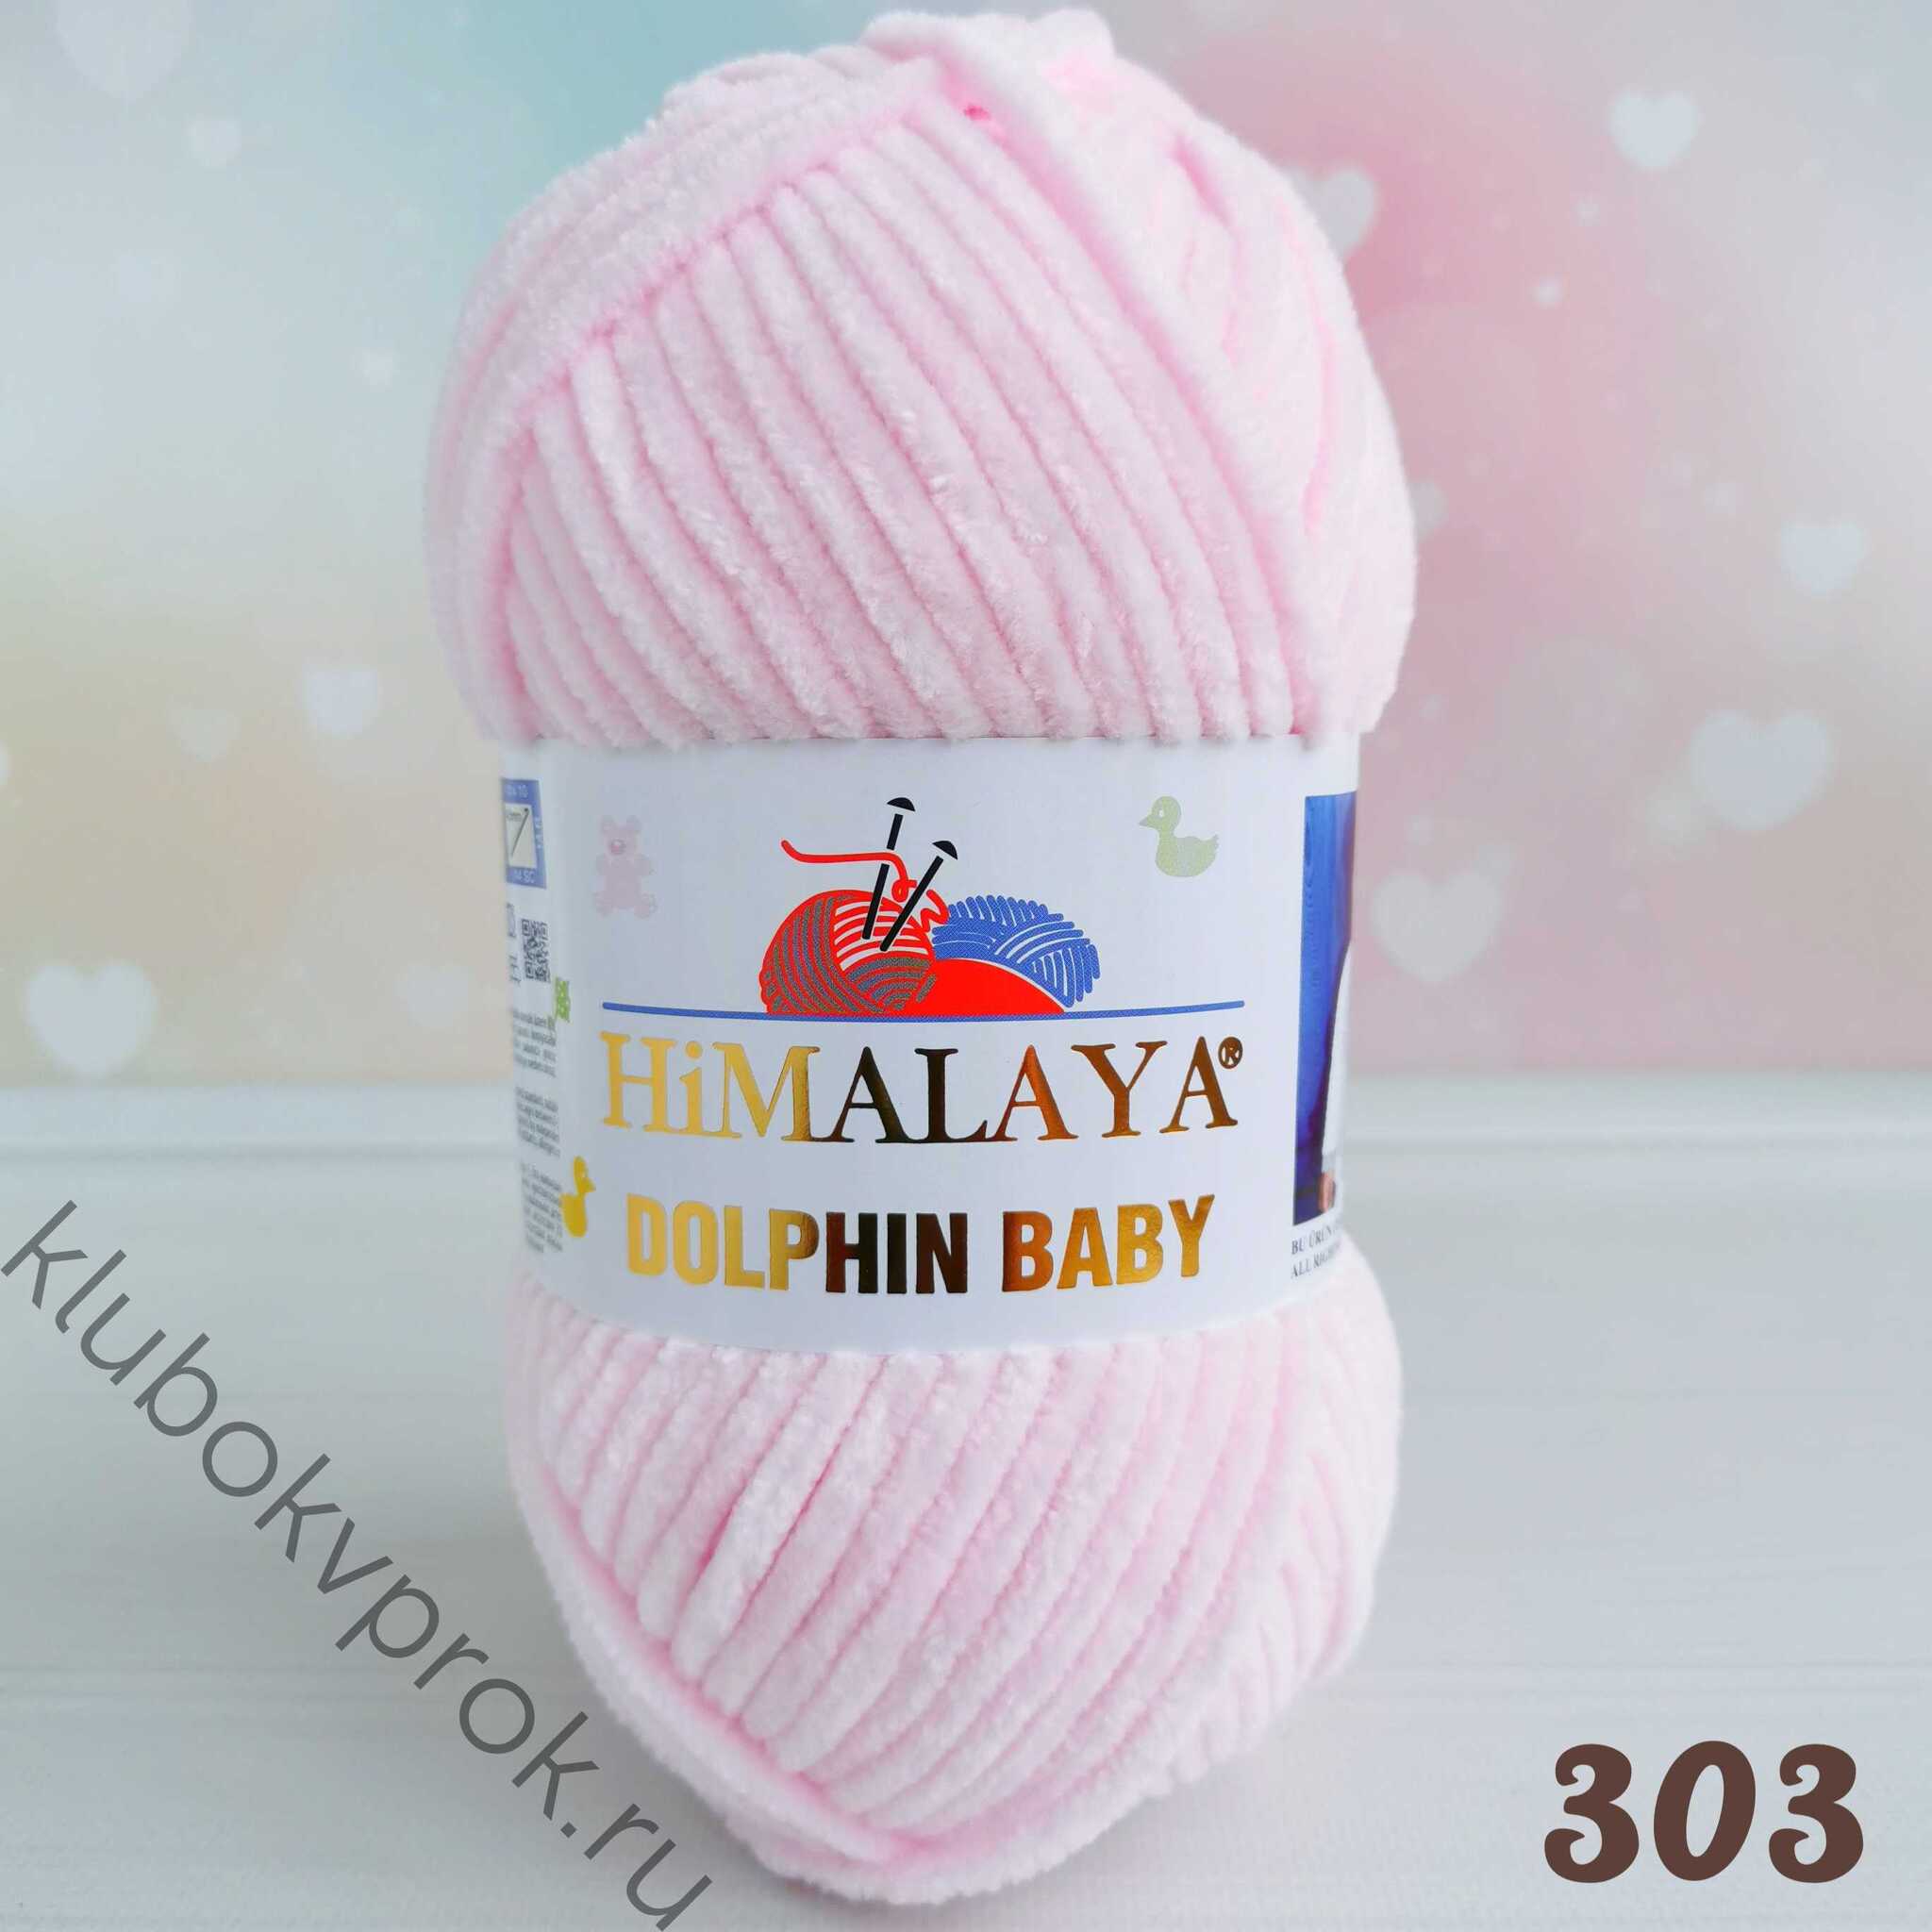 Пряжу Himalaya Dolphin Baby цвет 80319 нежно-розовый – купить дешево